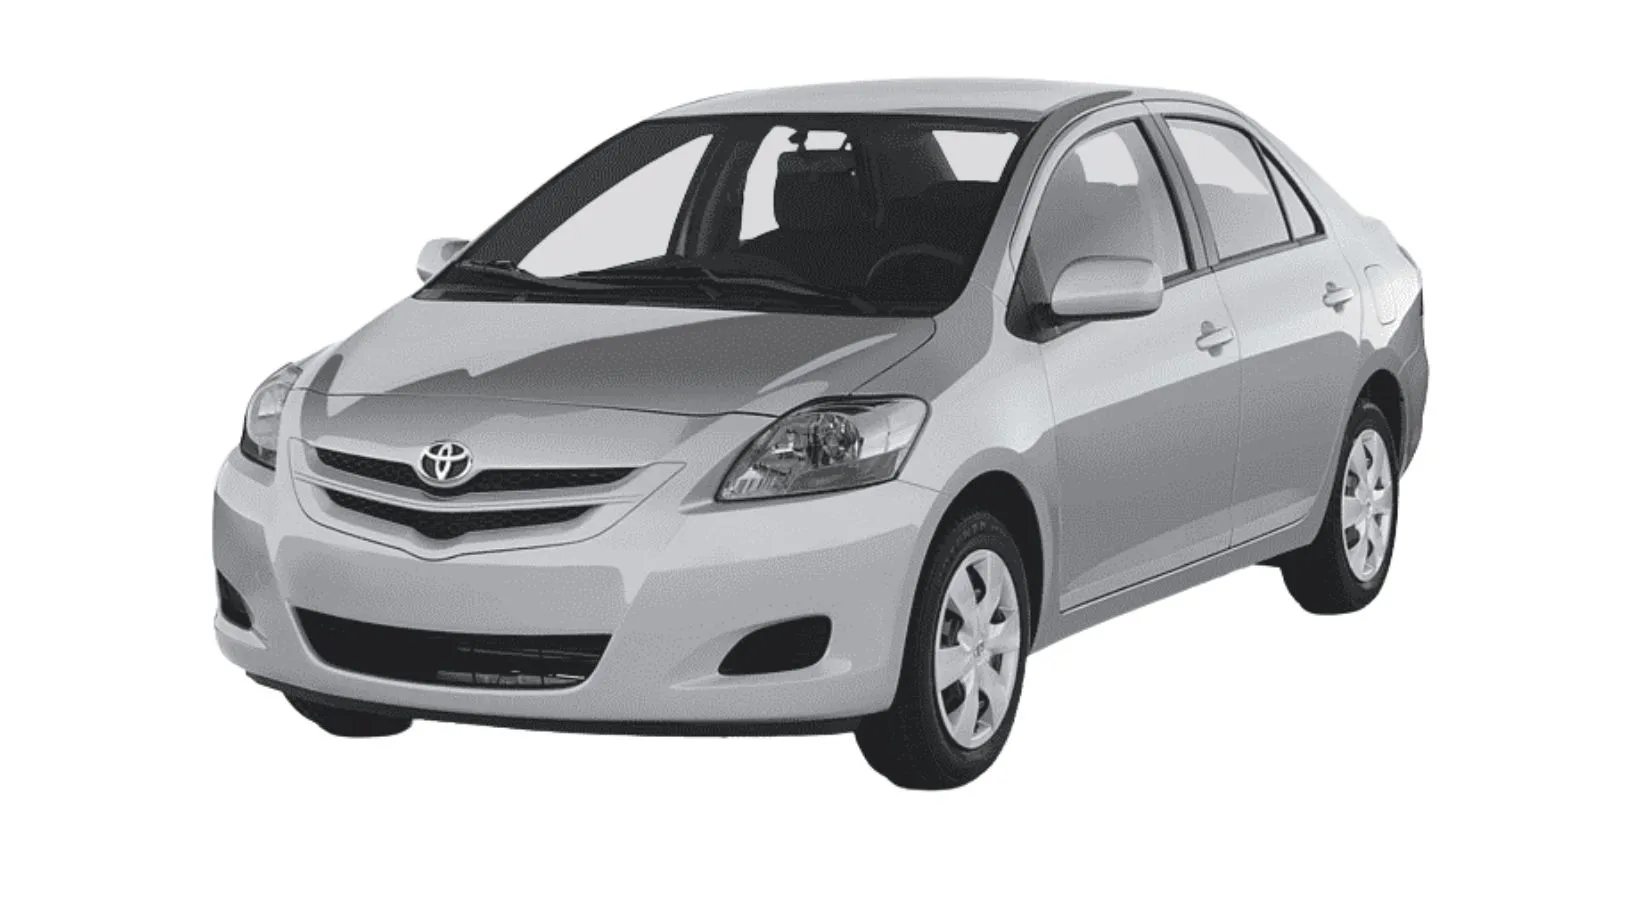 Toyota Belta Price in Sri Lanka